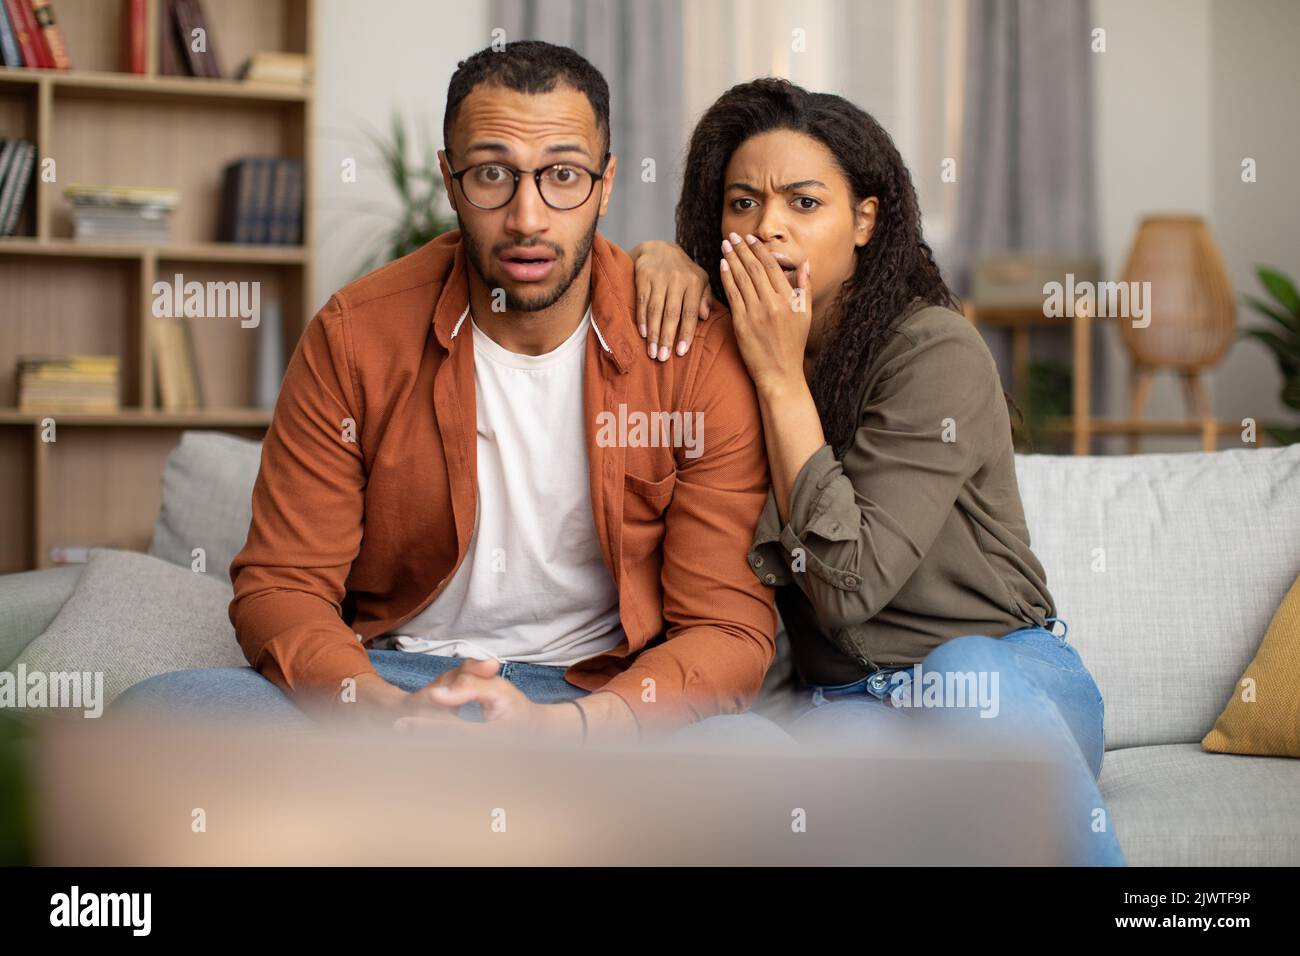 Schockiert afroamerikanisches Paar, das zu Hause schockierende TV-Inhalte ansieht Stockfoto